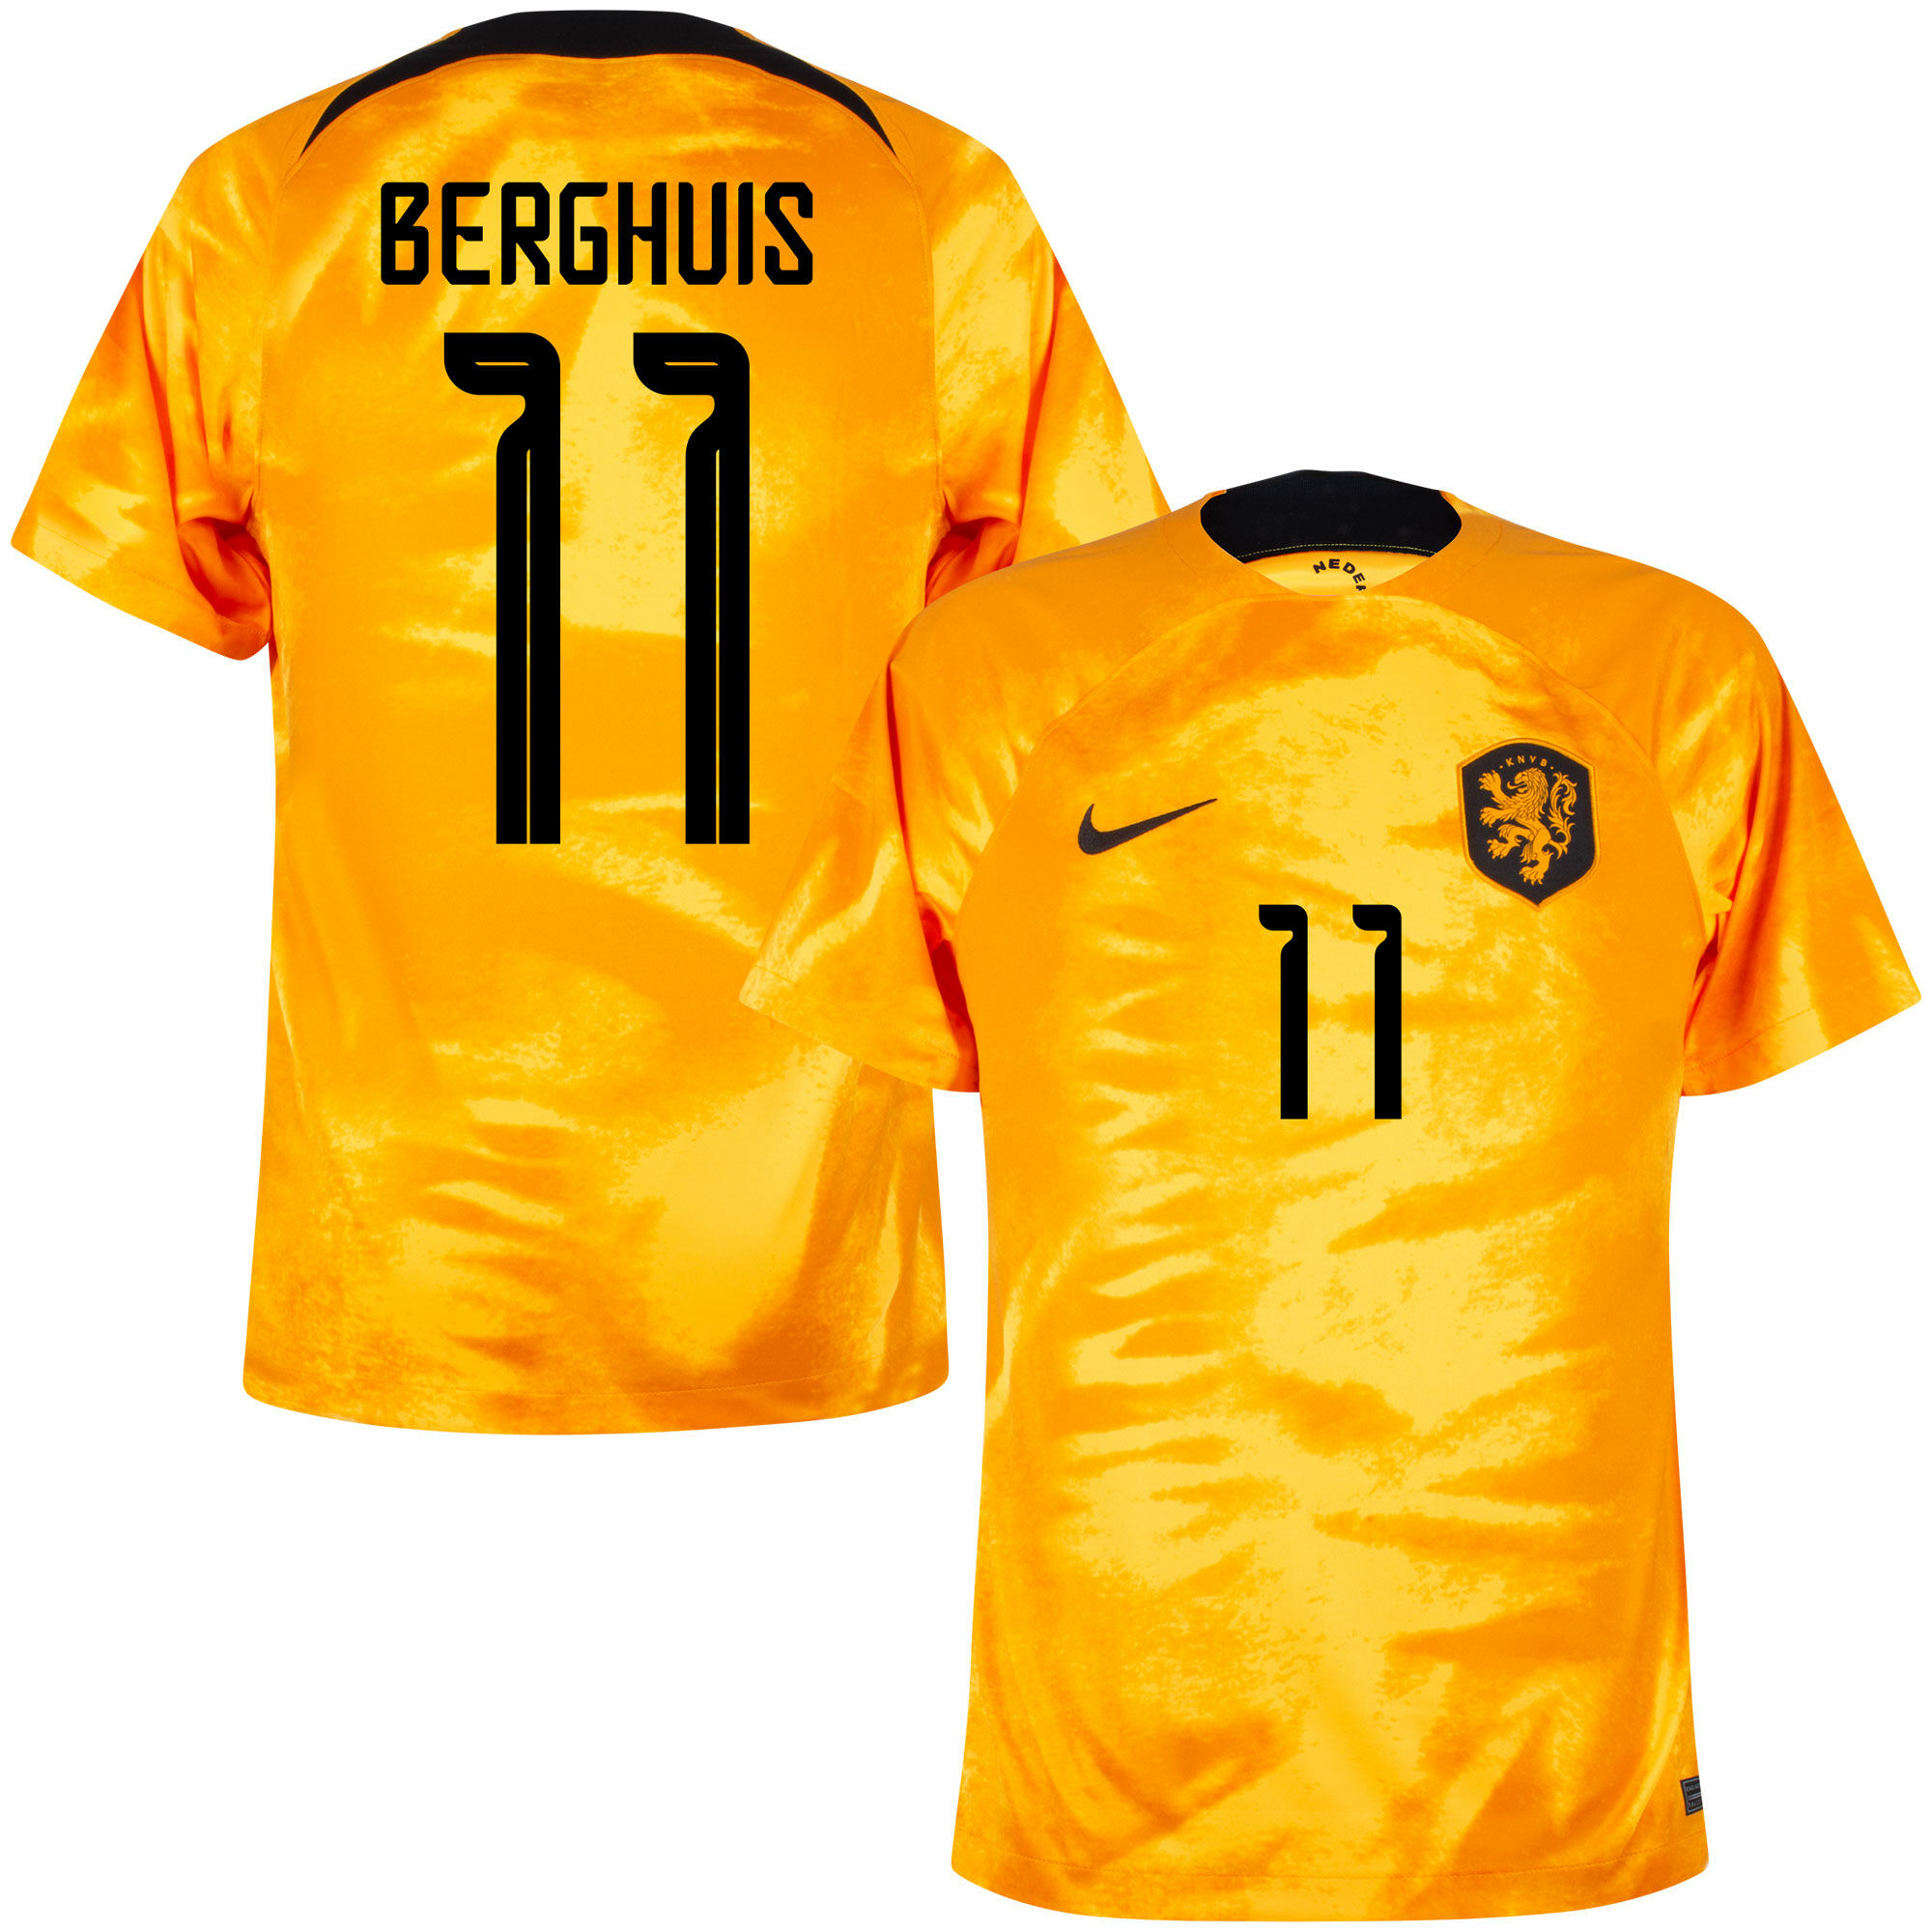 Nizozemí - Dres fotbalový - Steven Berghuis, oranžový, oficiální potisk, číslo 11, domácí, sezóna 2022/23